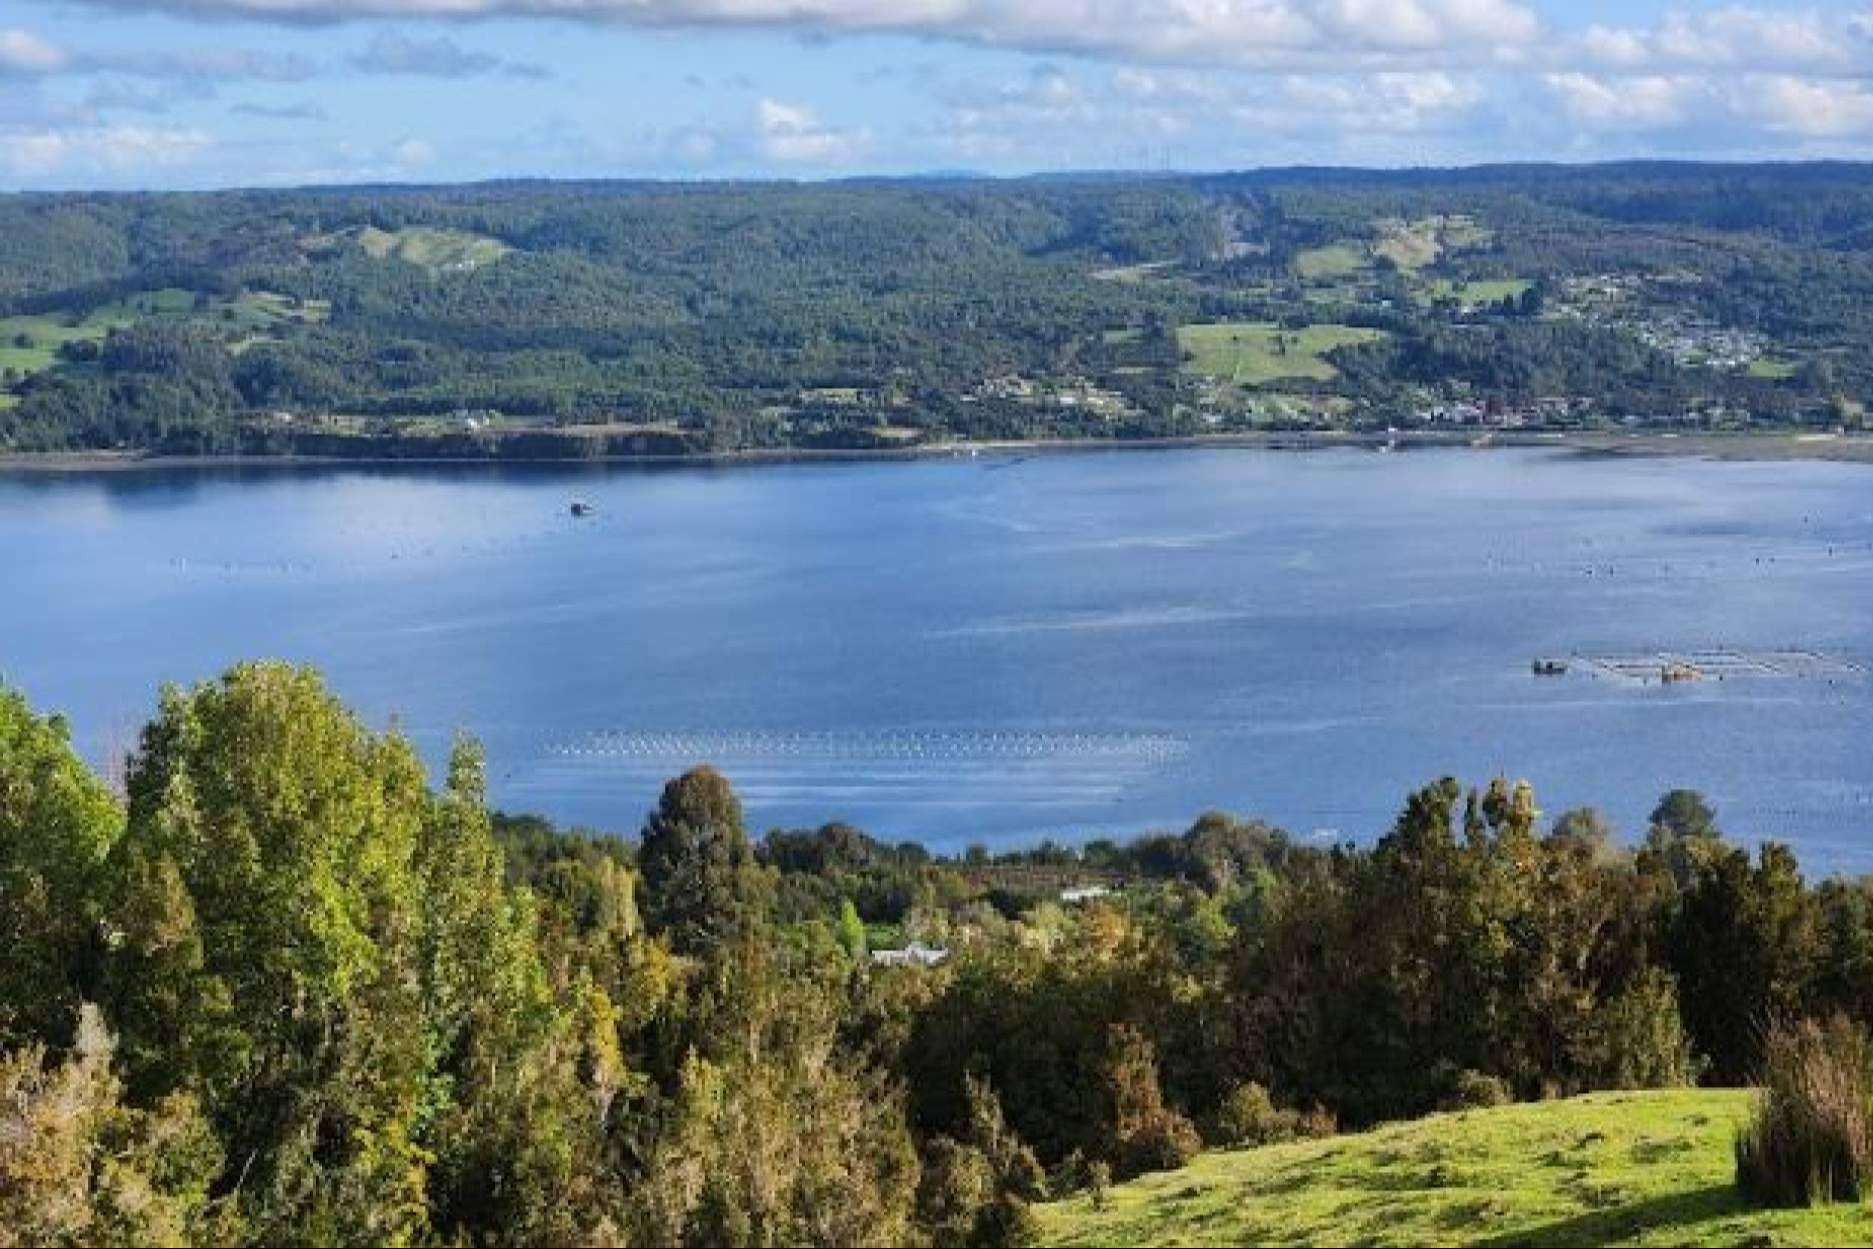  Azul Canelo, el proyecto de Latitudes Australes para invertir en una parcela y descubrir la belleza de Chiloé 